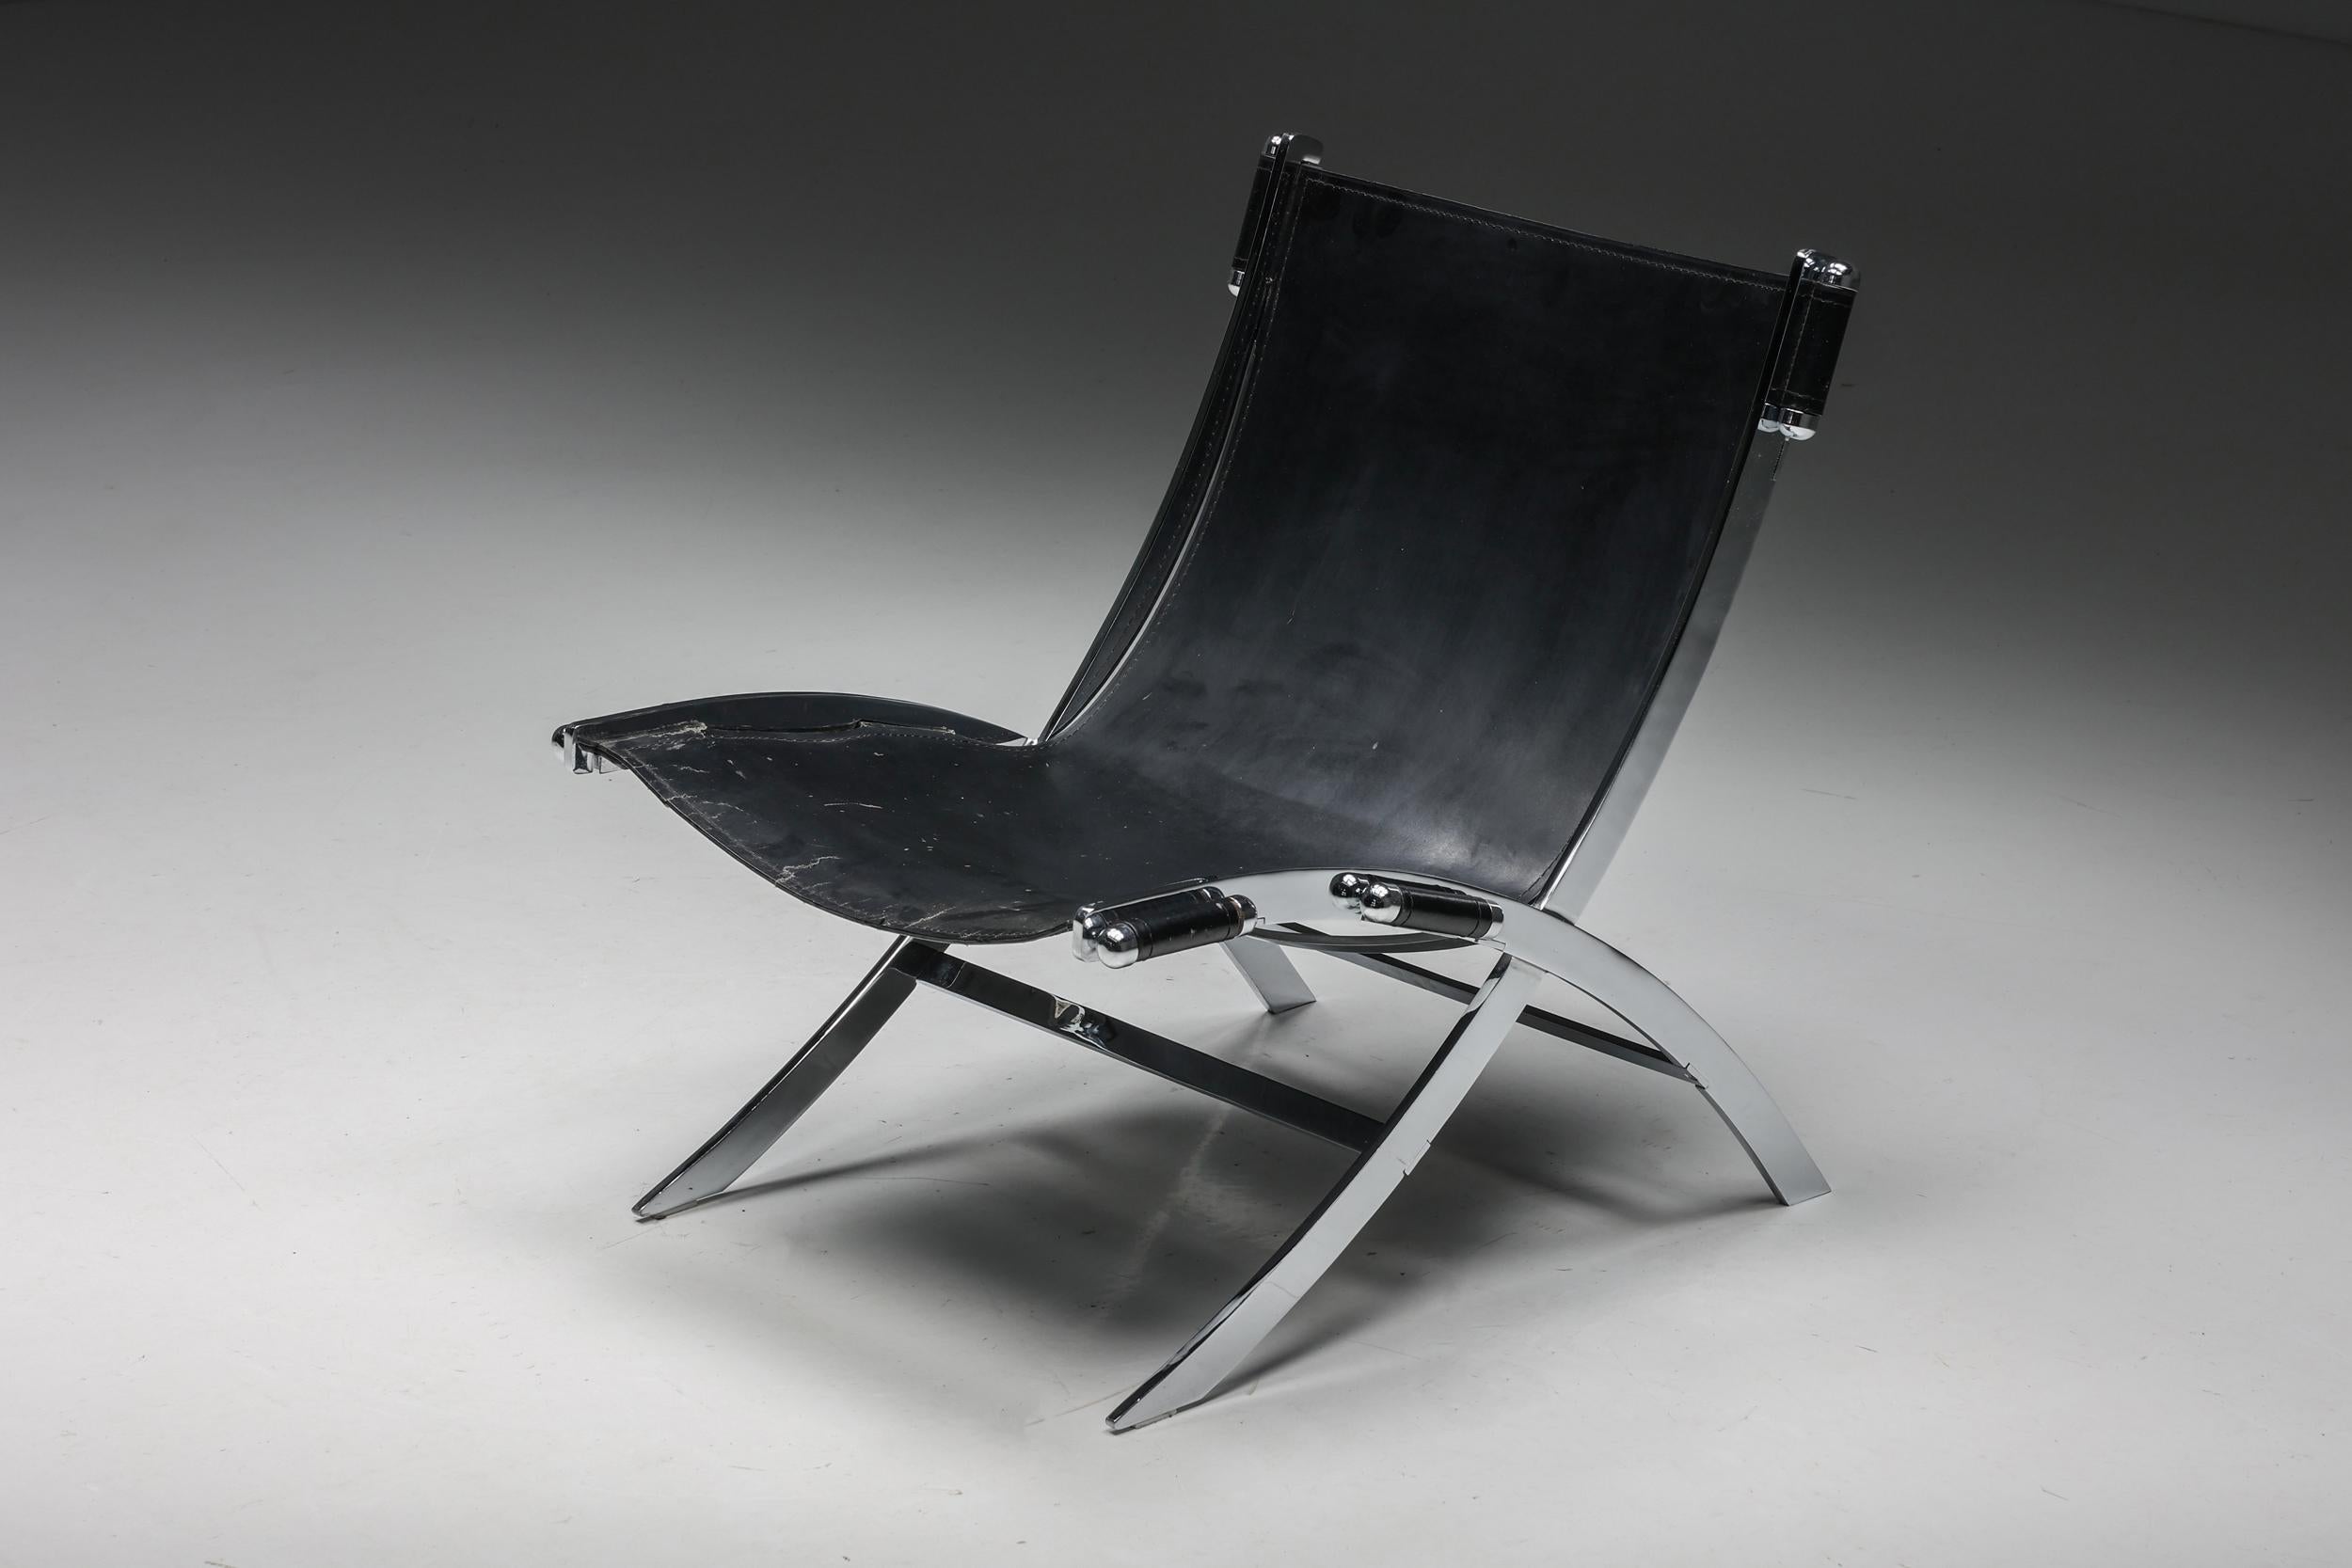 Chaise longue ILVA Design Modèle Cuba, avec une structure en métal chromé et un revêtement en cuir noir. Le modèle Cuba s'inspire de la 